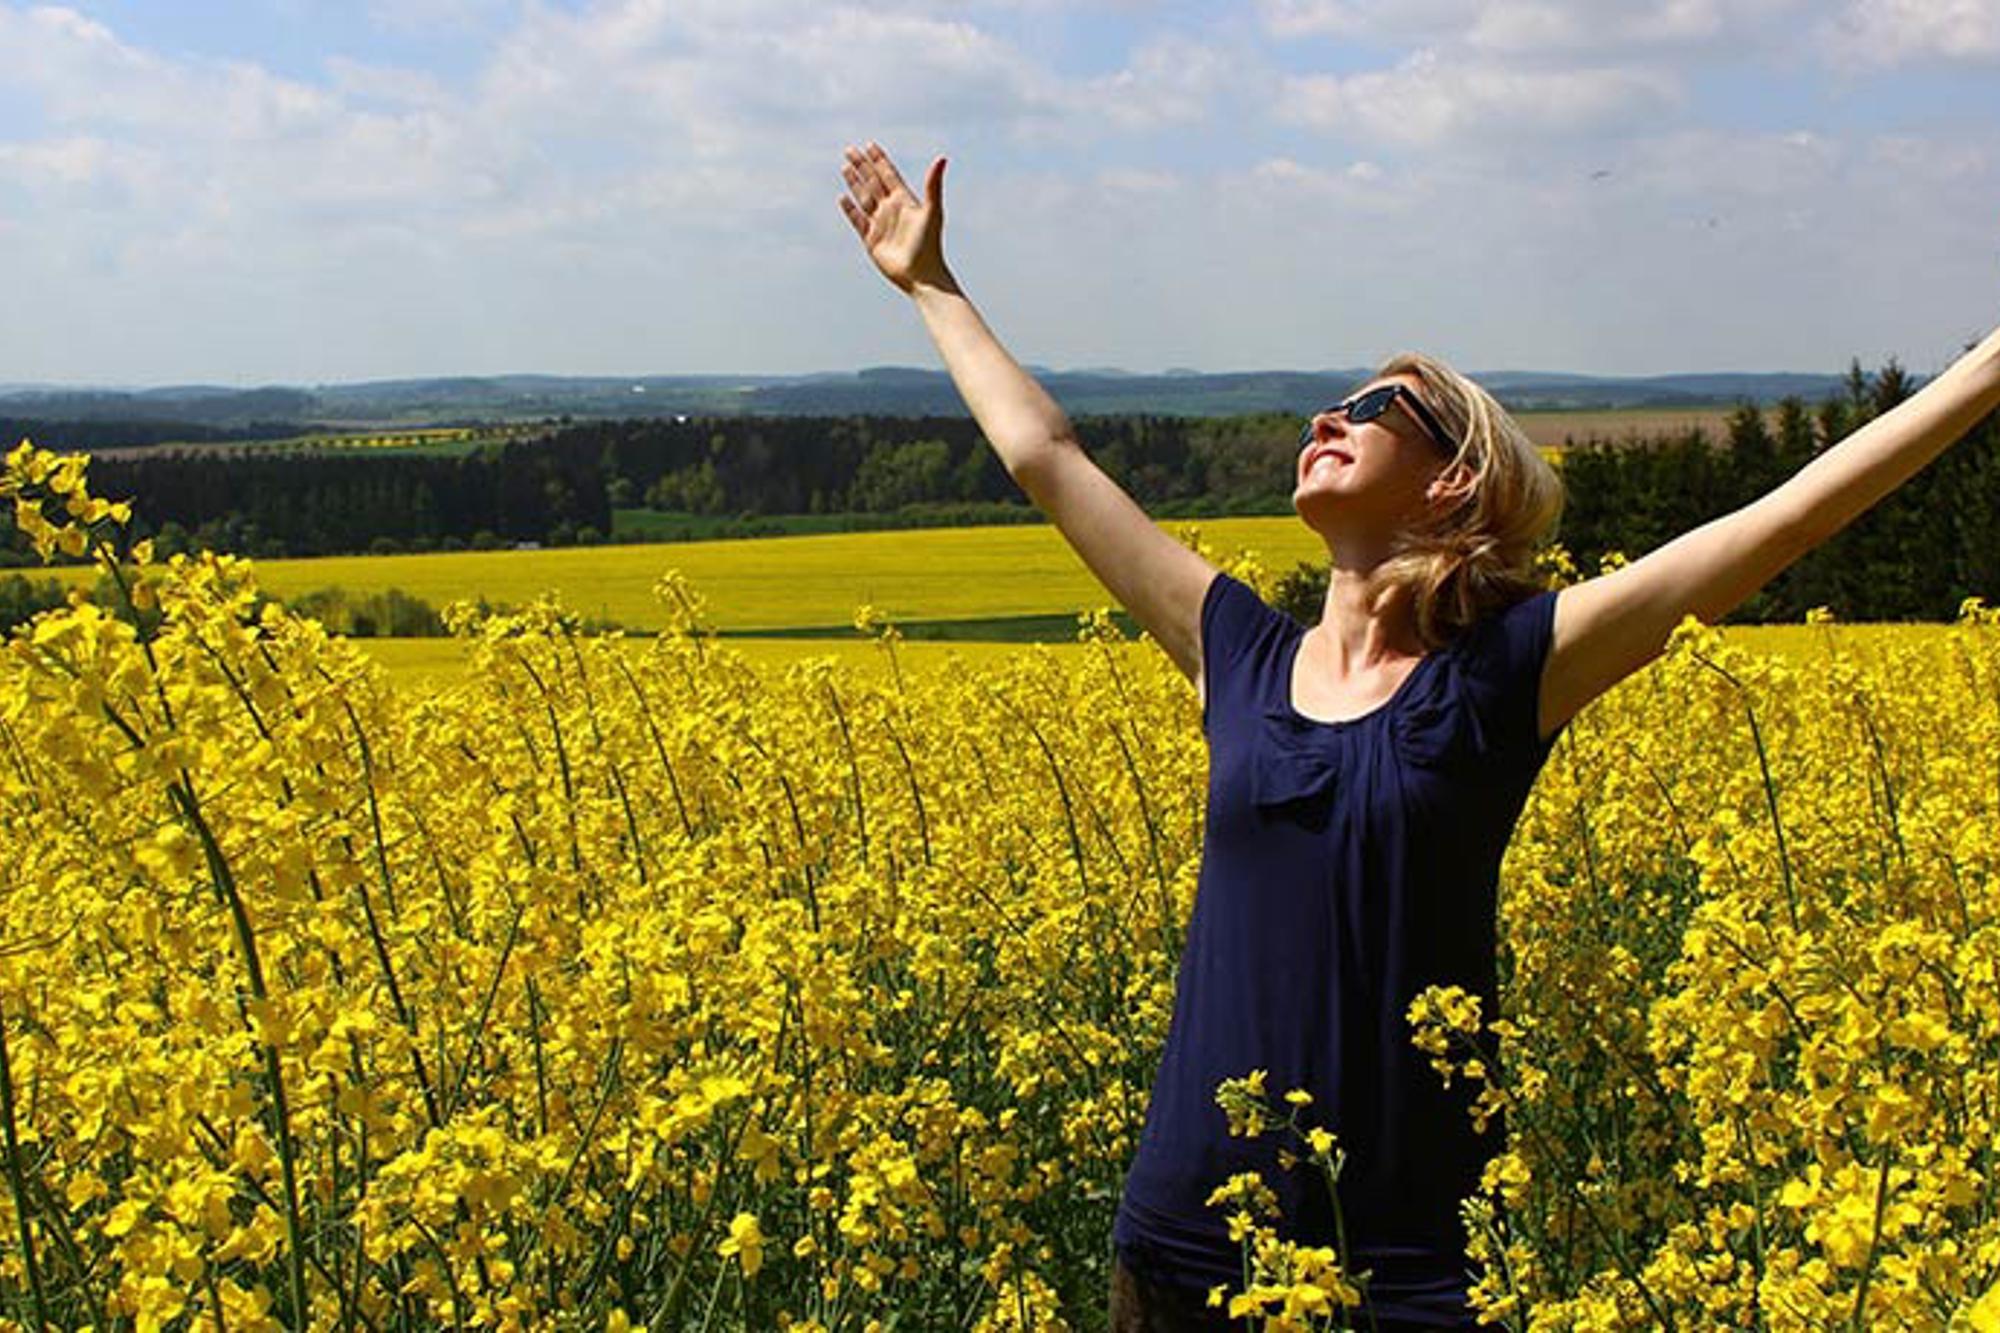 En glad kvinna på ett fält av gula blommor. Hon sträcker båda armarna upp i luften och tittar upp mot himlen.